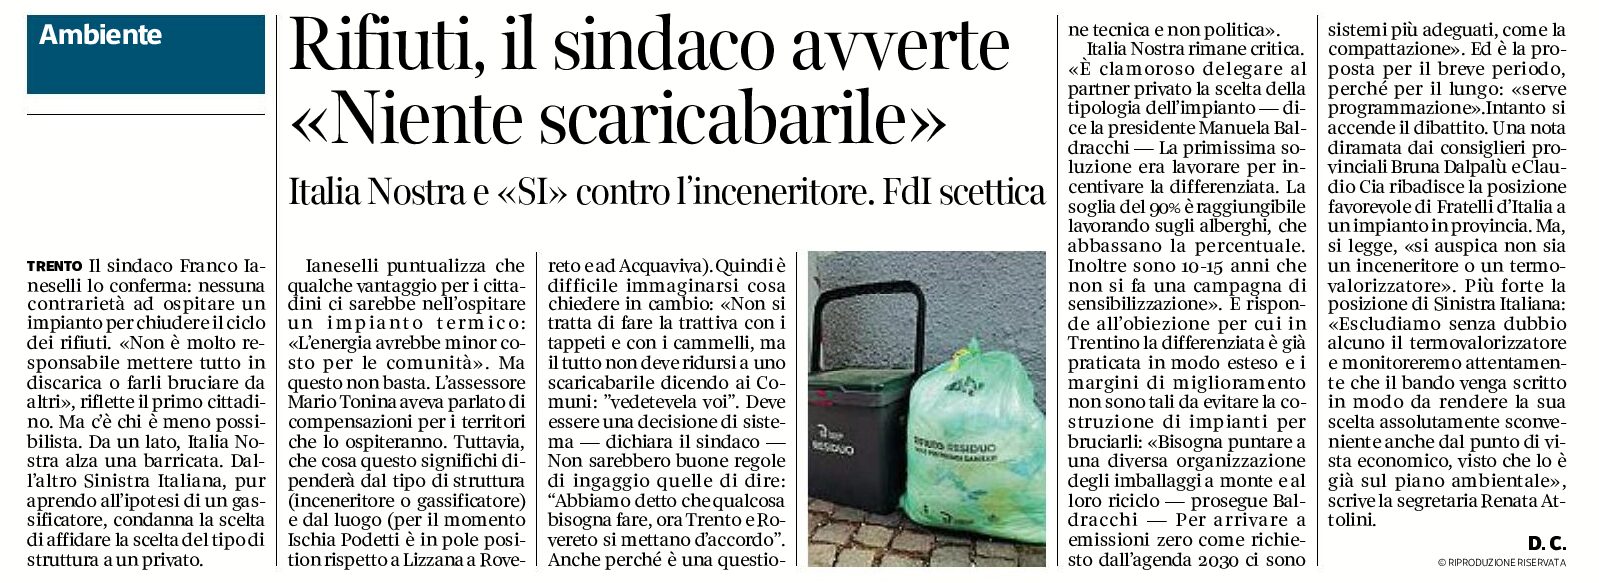 Trentino, rifiuti: Italia Nostra e SI contro l’inceneritore